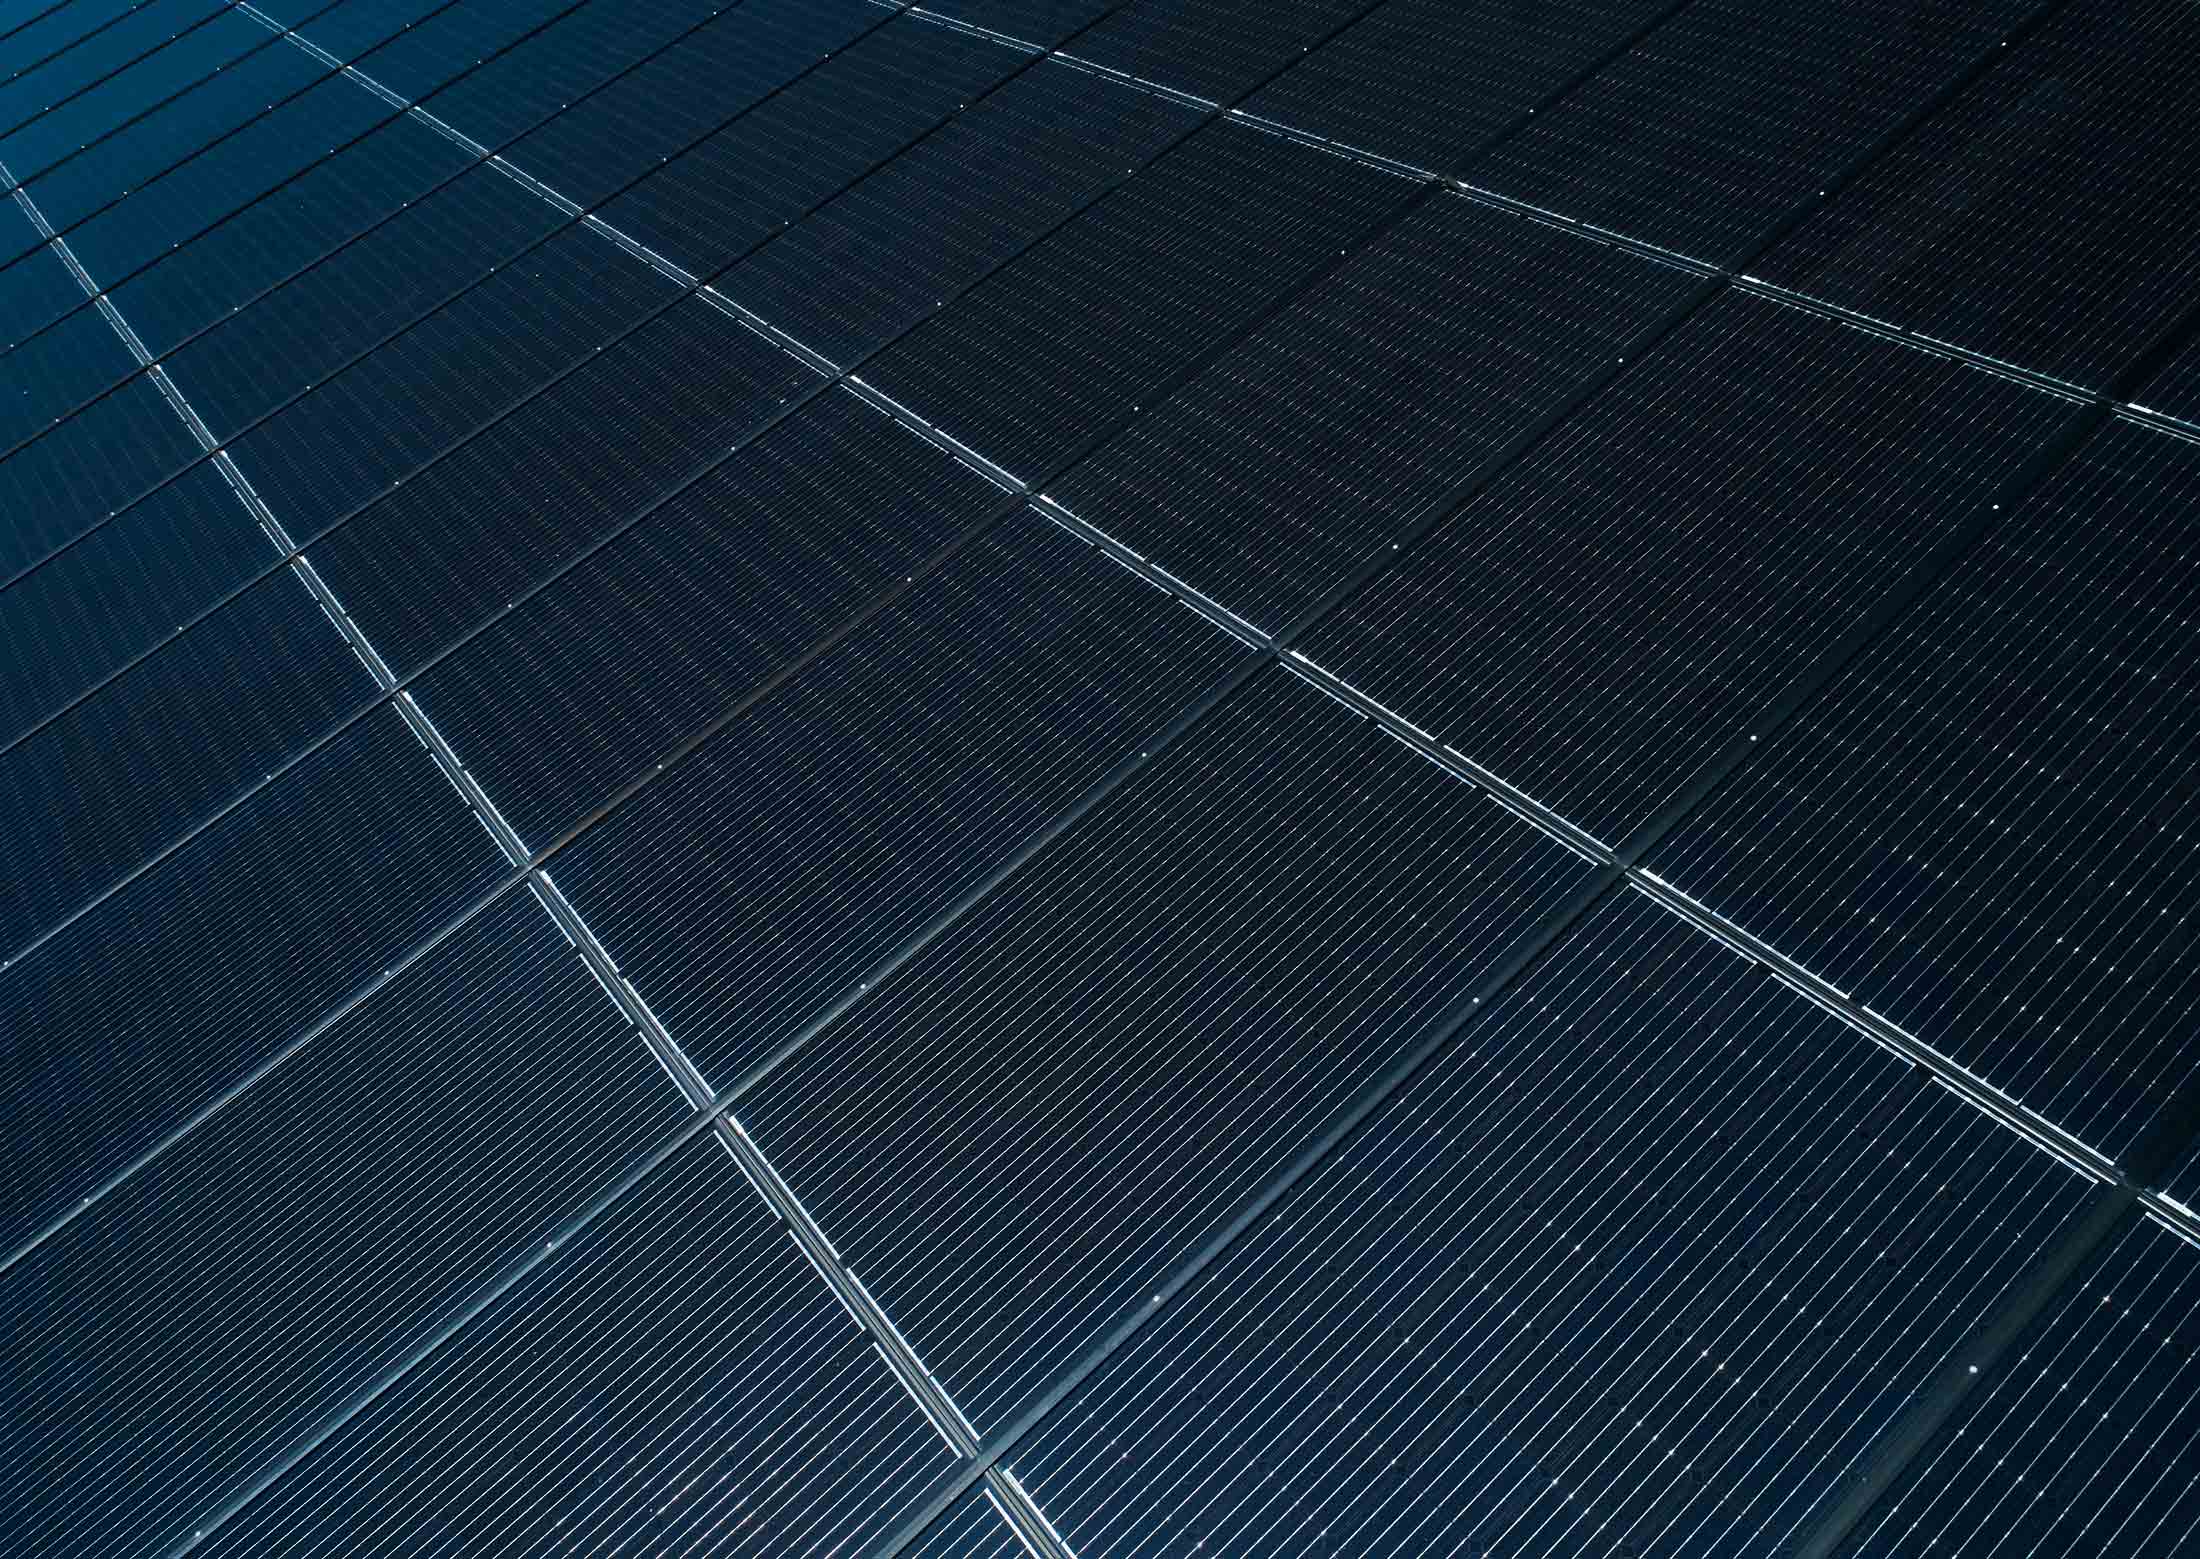 Mise en valeur de panneaux solaires, photographie réalisée par drone